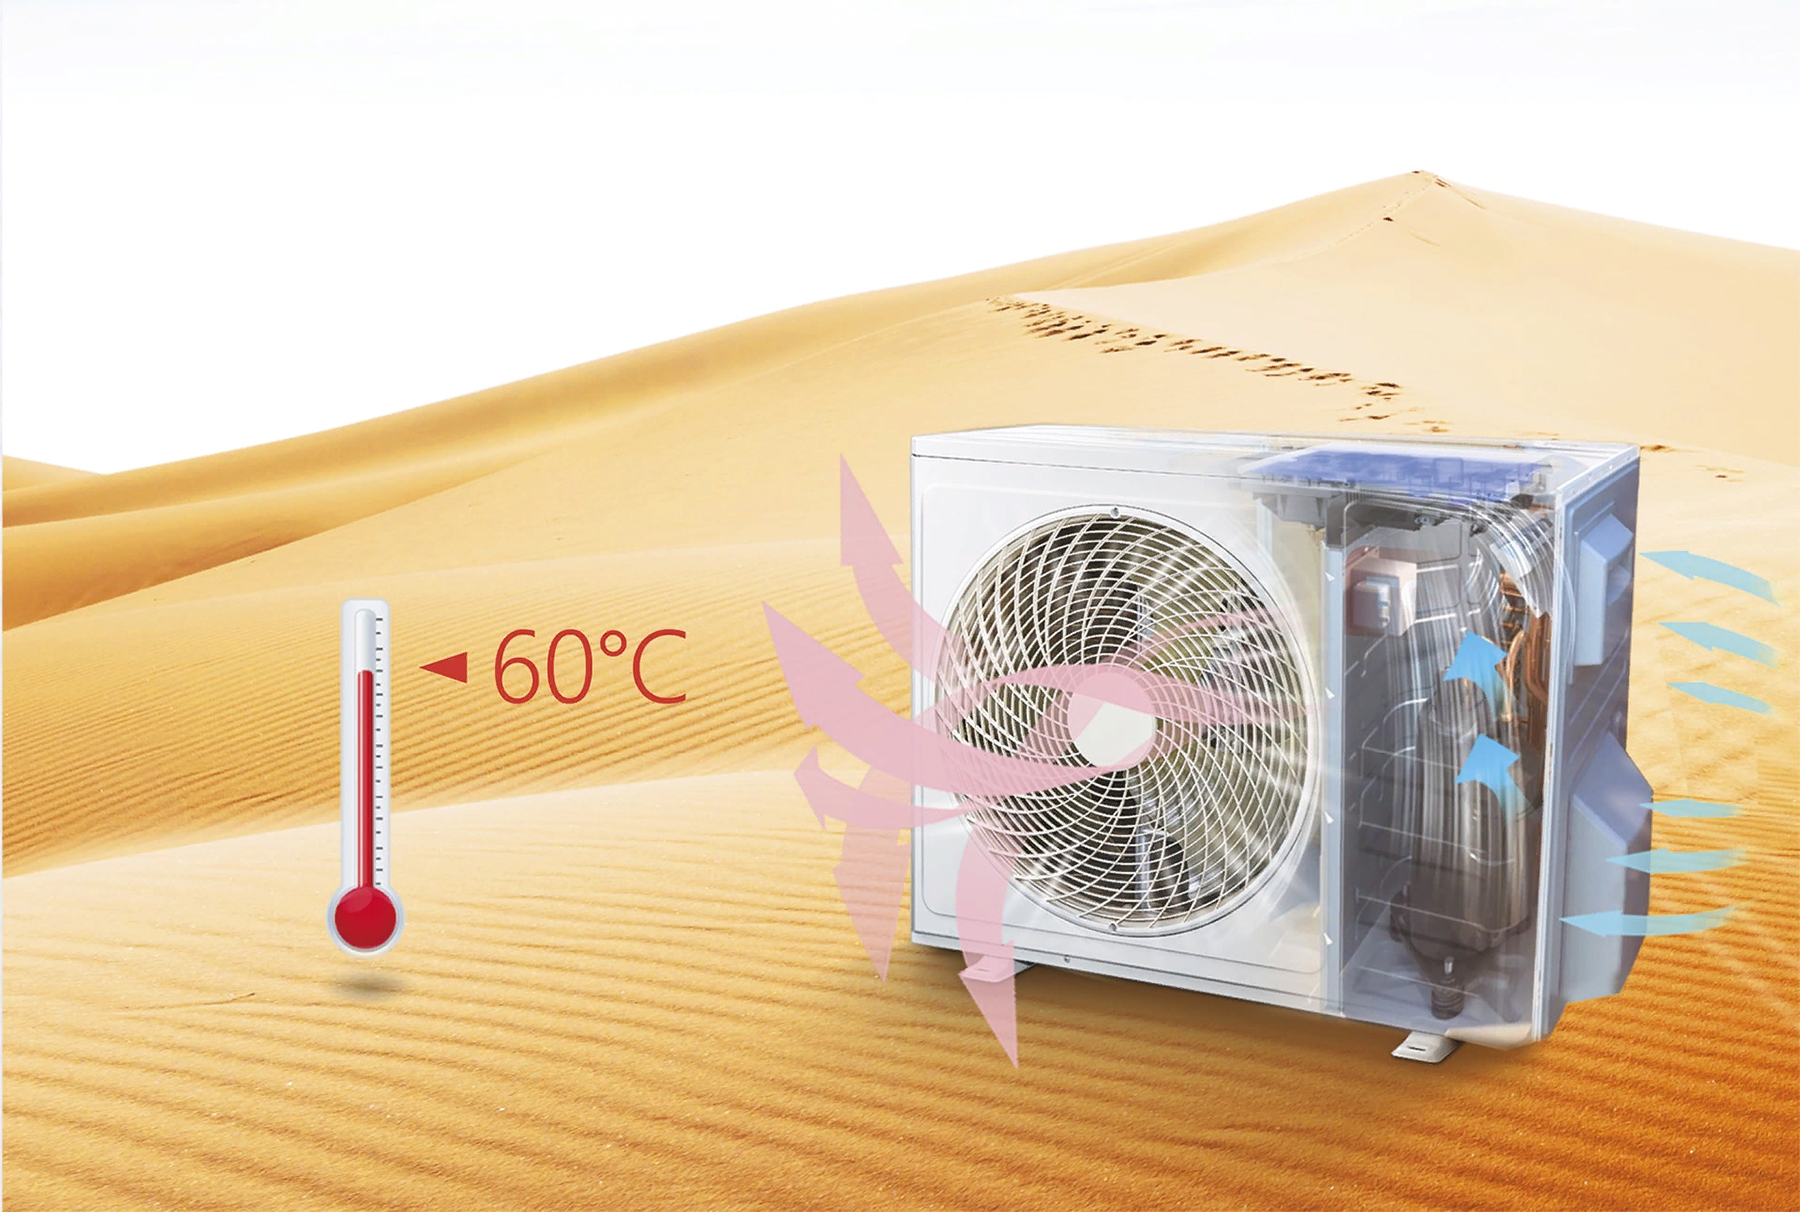 Сильное охлаждение при высокой температуре окружающей среды кондиционера TCL